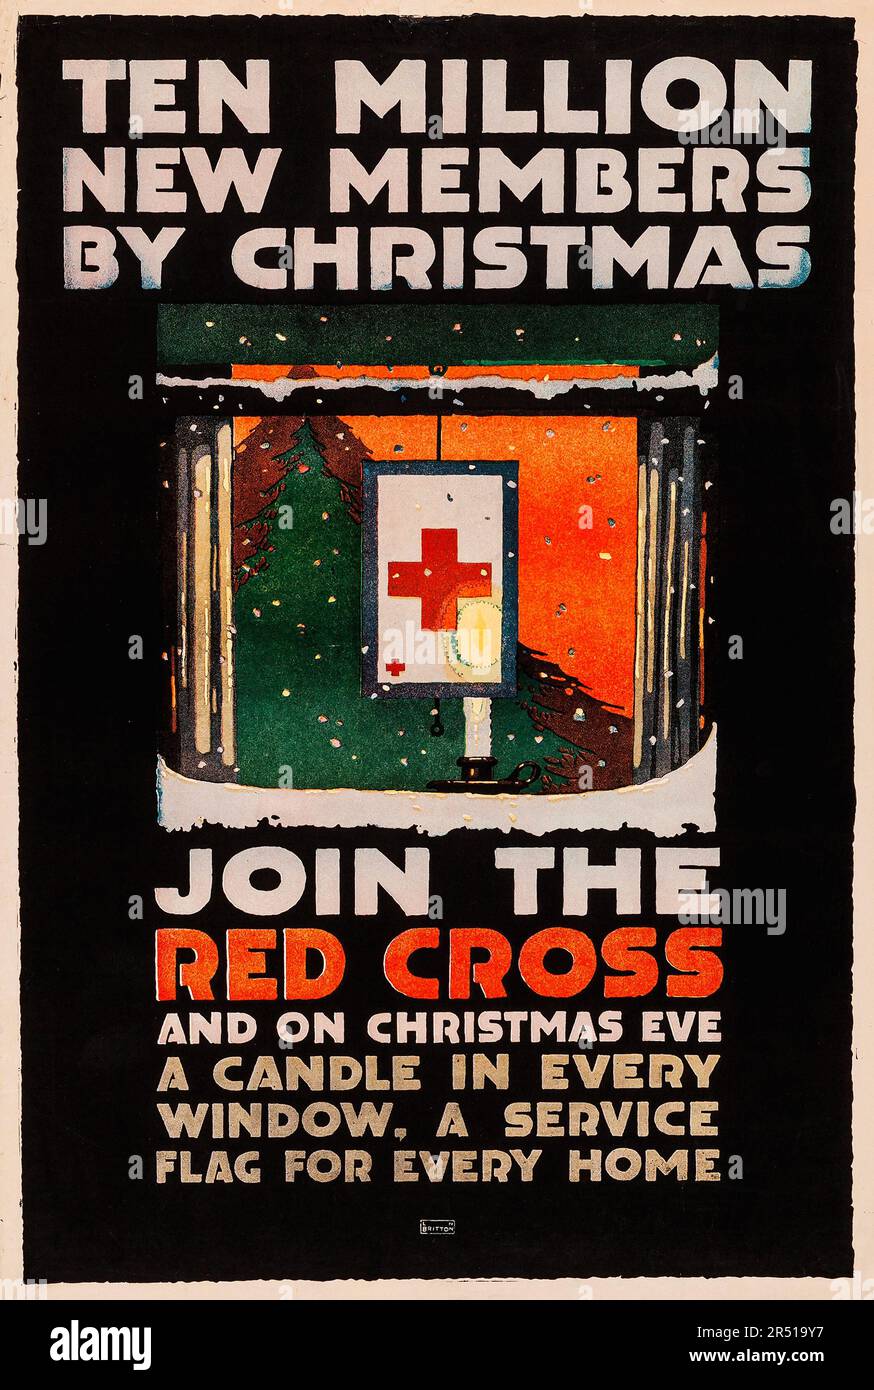 Propagande de la première Guerre mondiale américaine (Croix-Rouge américaine, 1917) affiche de collecte de fonds « dix millions de nouveaux membres à Noël » Banque D'Images